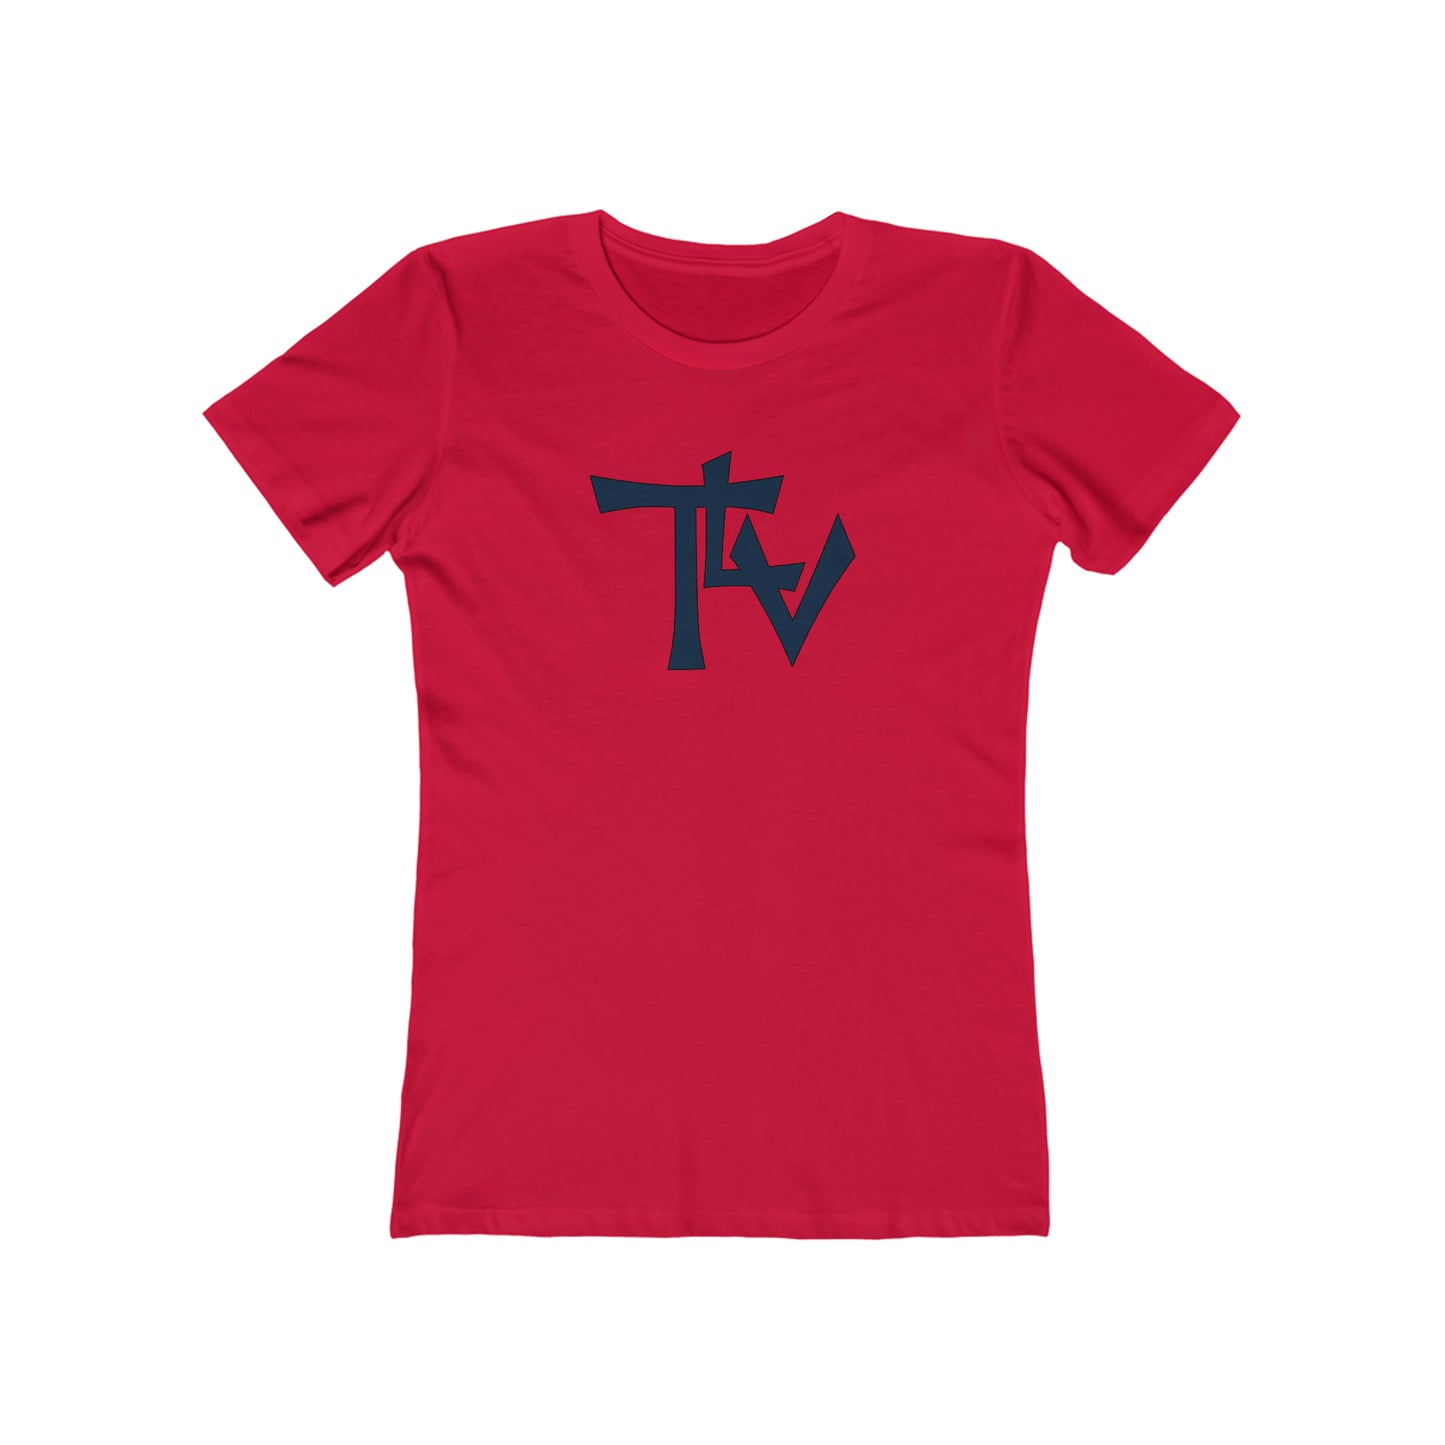 Tel Aviv - Women's T-Shirt